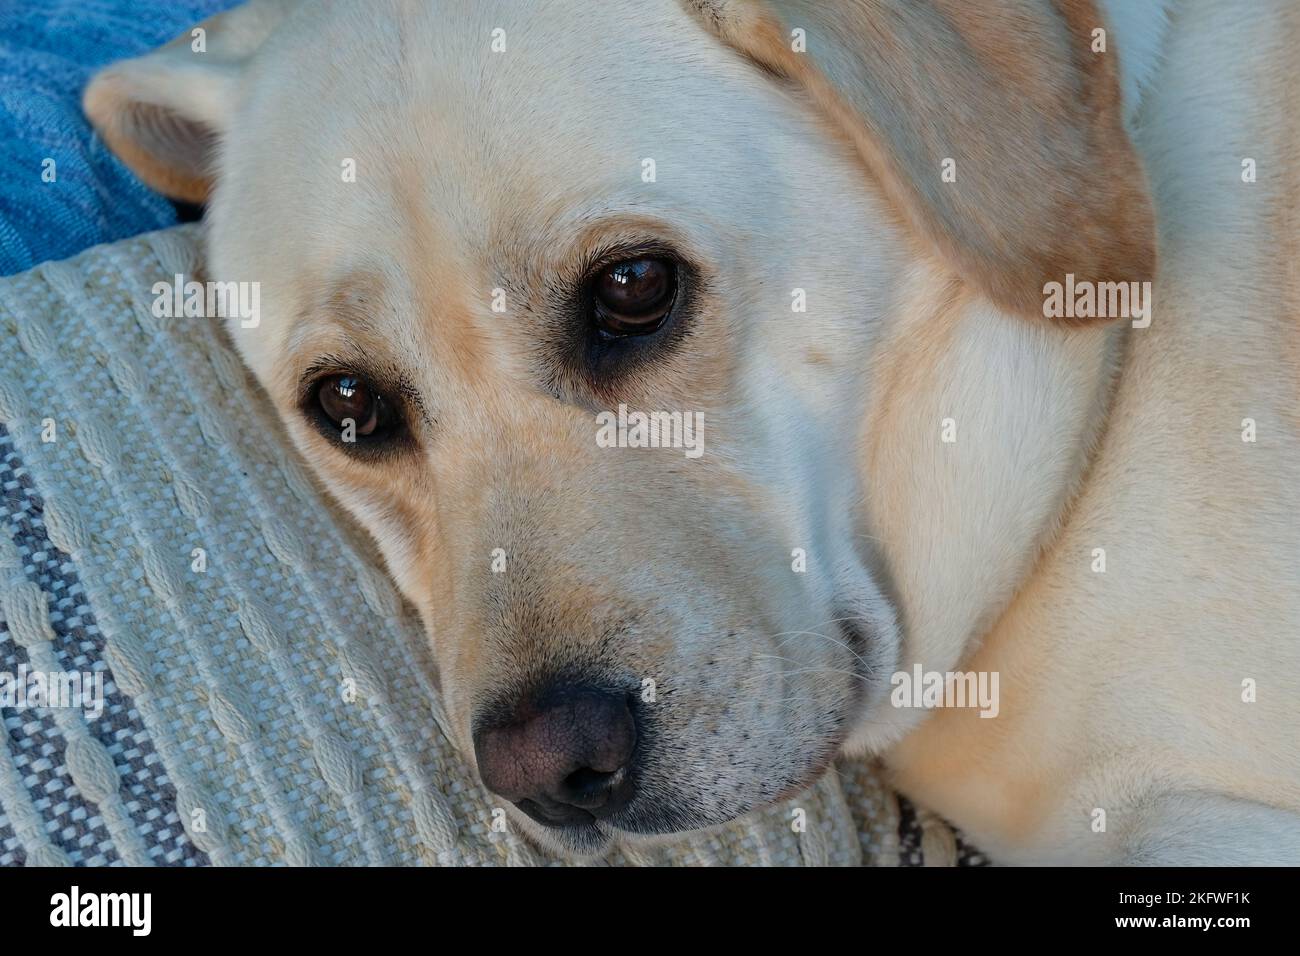 Nahaufnahme eines gelben labrador-Retriever, der auf einer Couch liegt - John Gollop Stockfoto